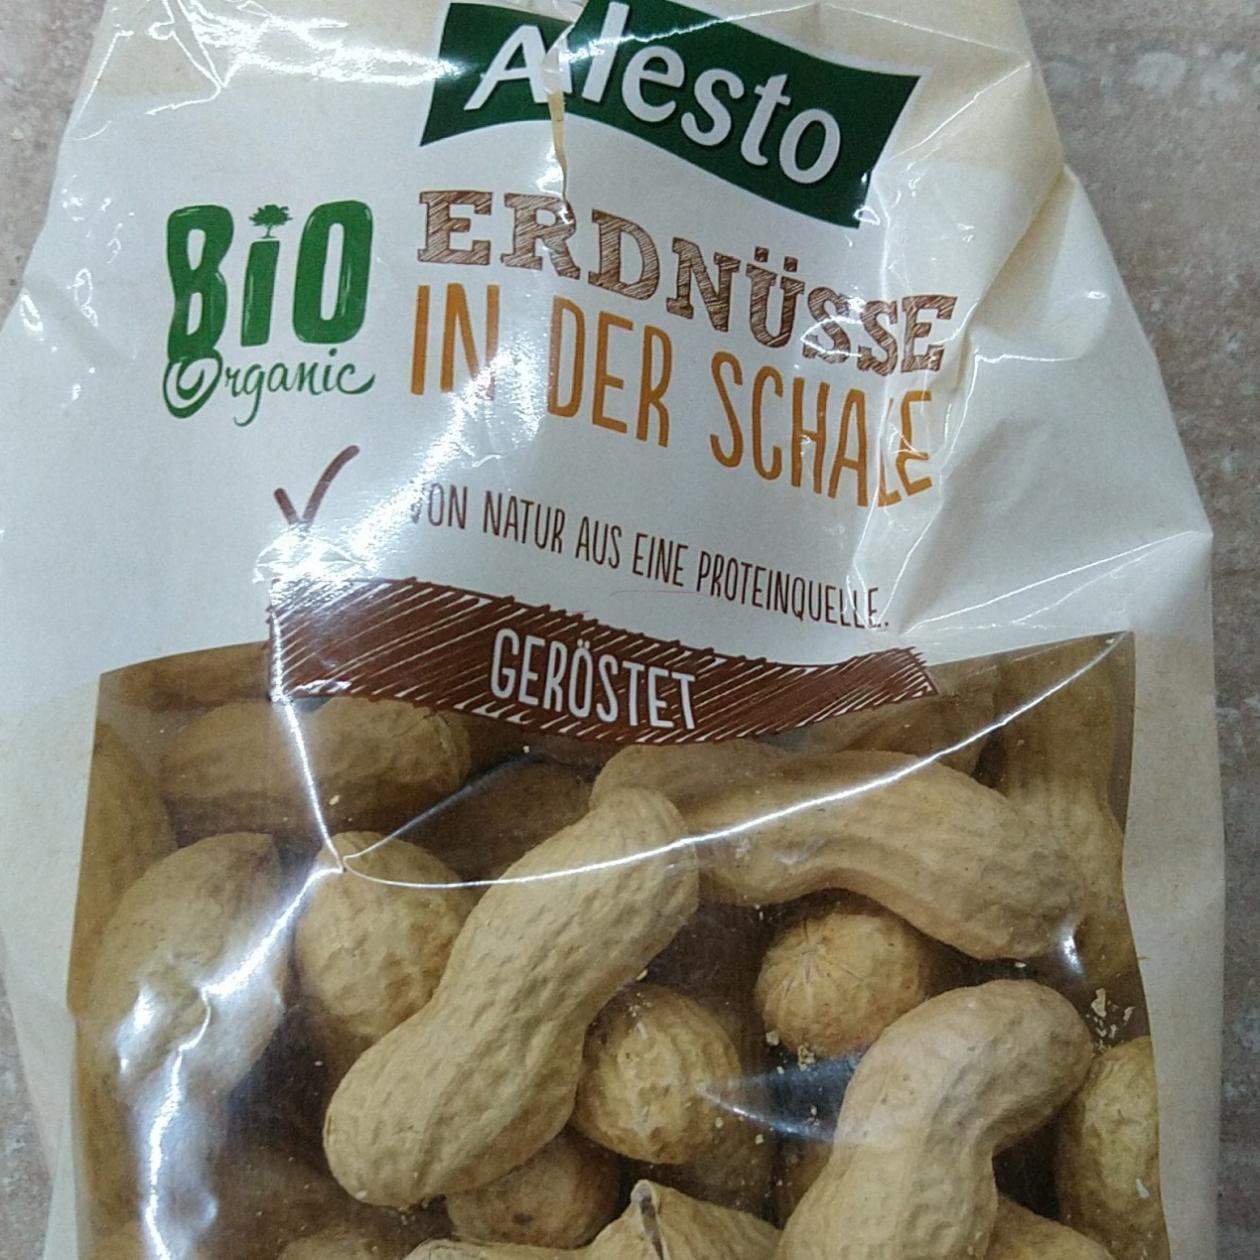 Fotografie - Bio Erdnüsse in der Schale geröstet Alesto